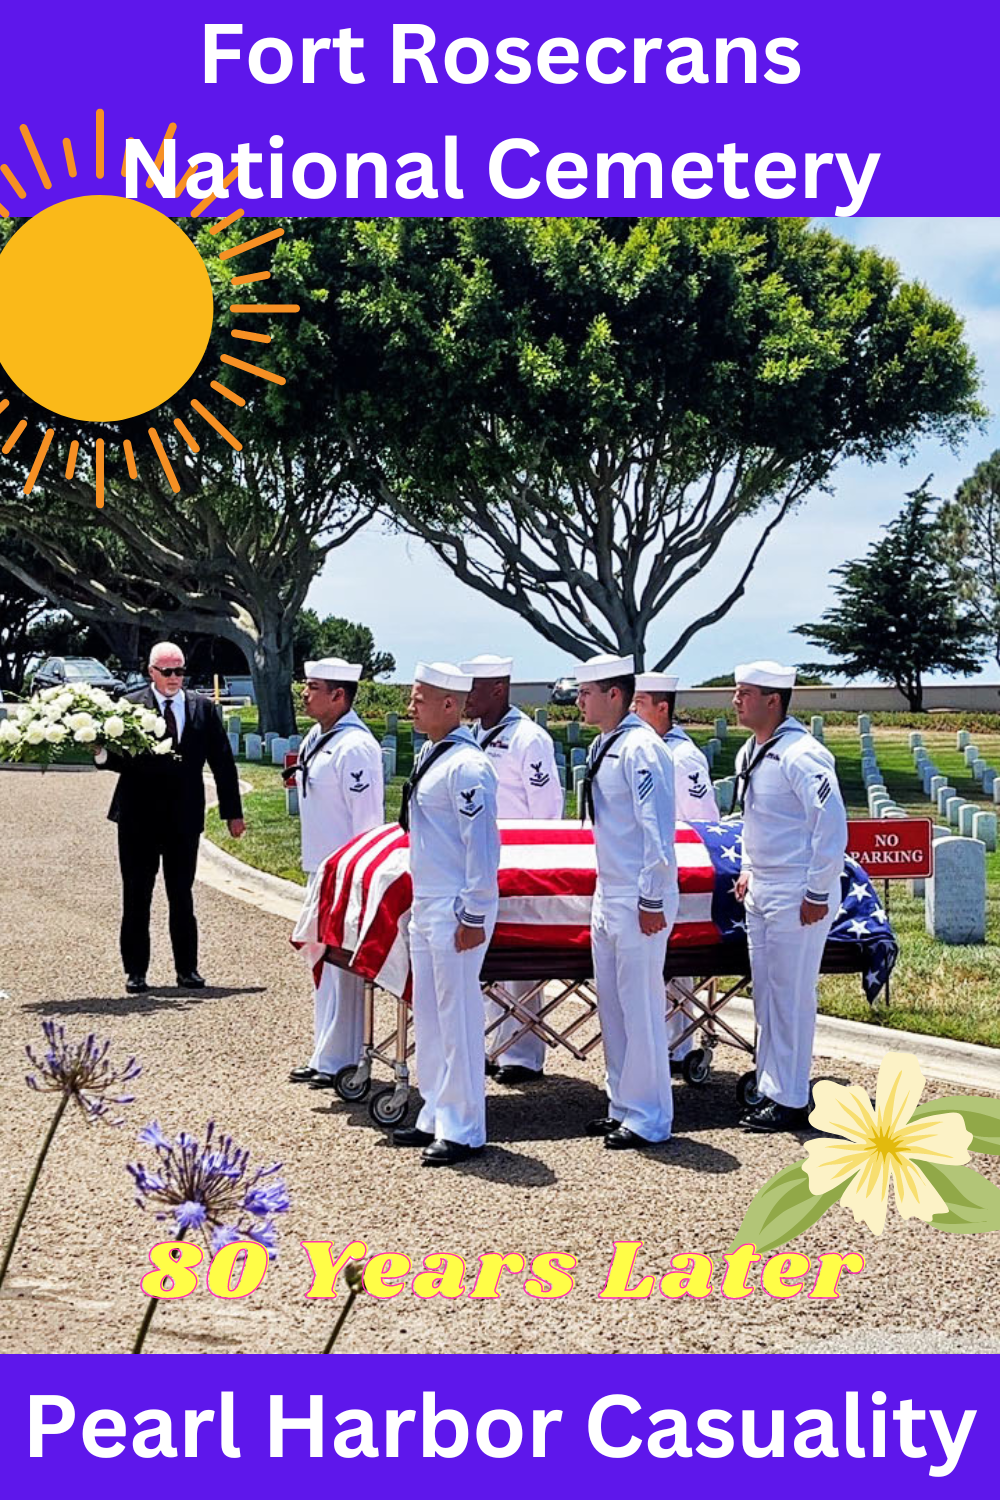 Fort Rosecrans Interment in casket and honor guard for  Pearl Harbor veteran